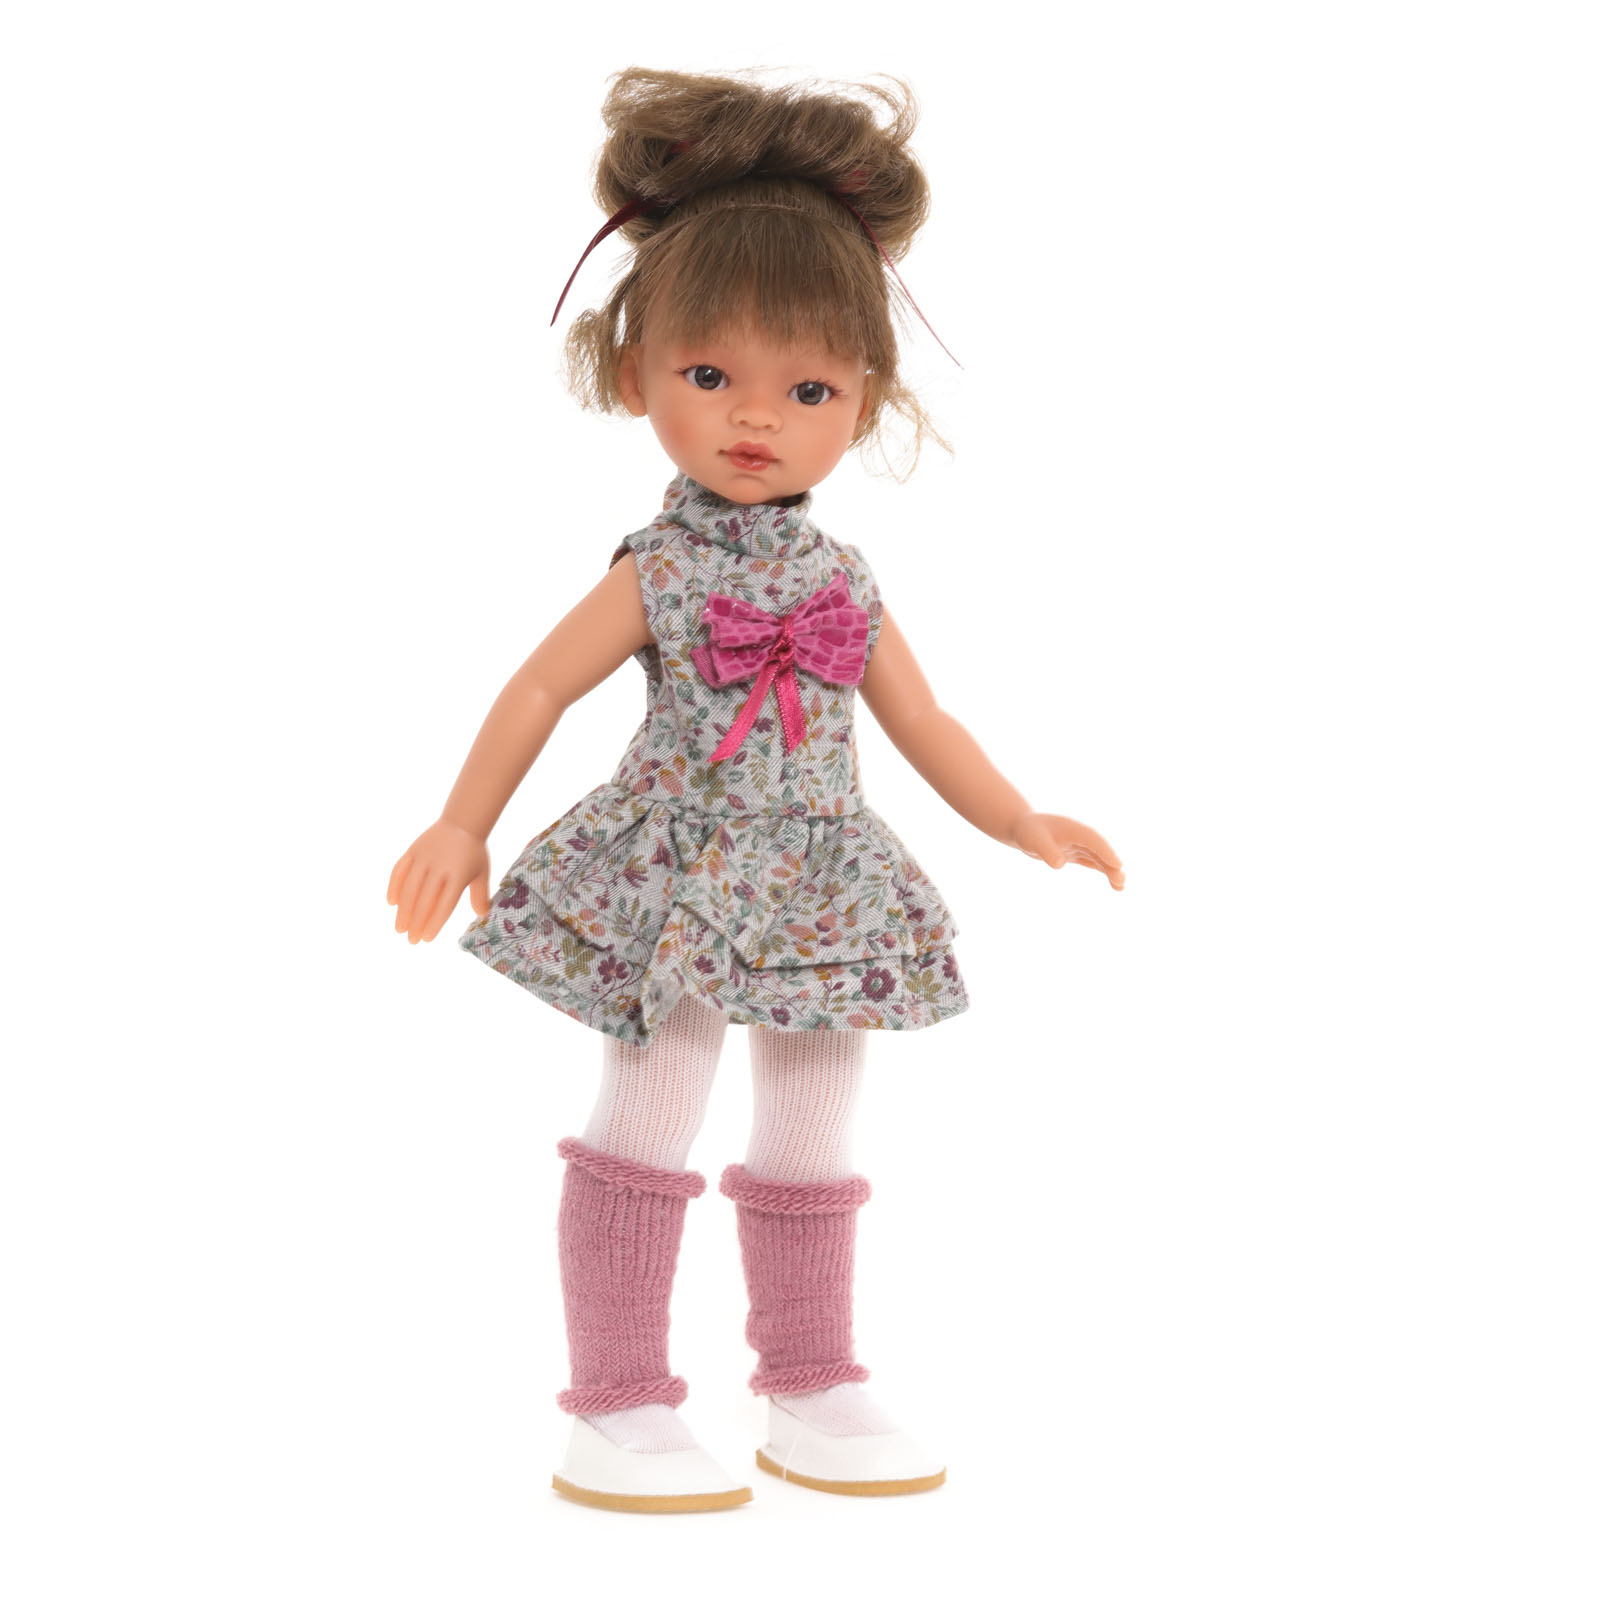 Кукла девочка Antonio Juan Ноа модный образ, 33 см, виниловая 25195 кукла девочка antonio juan ноа в платье в полоску 33 см виниловая испанская 25299